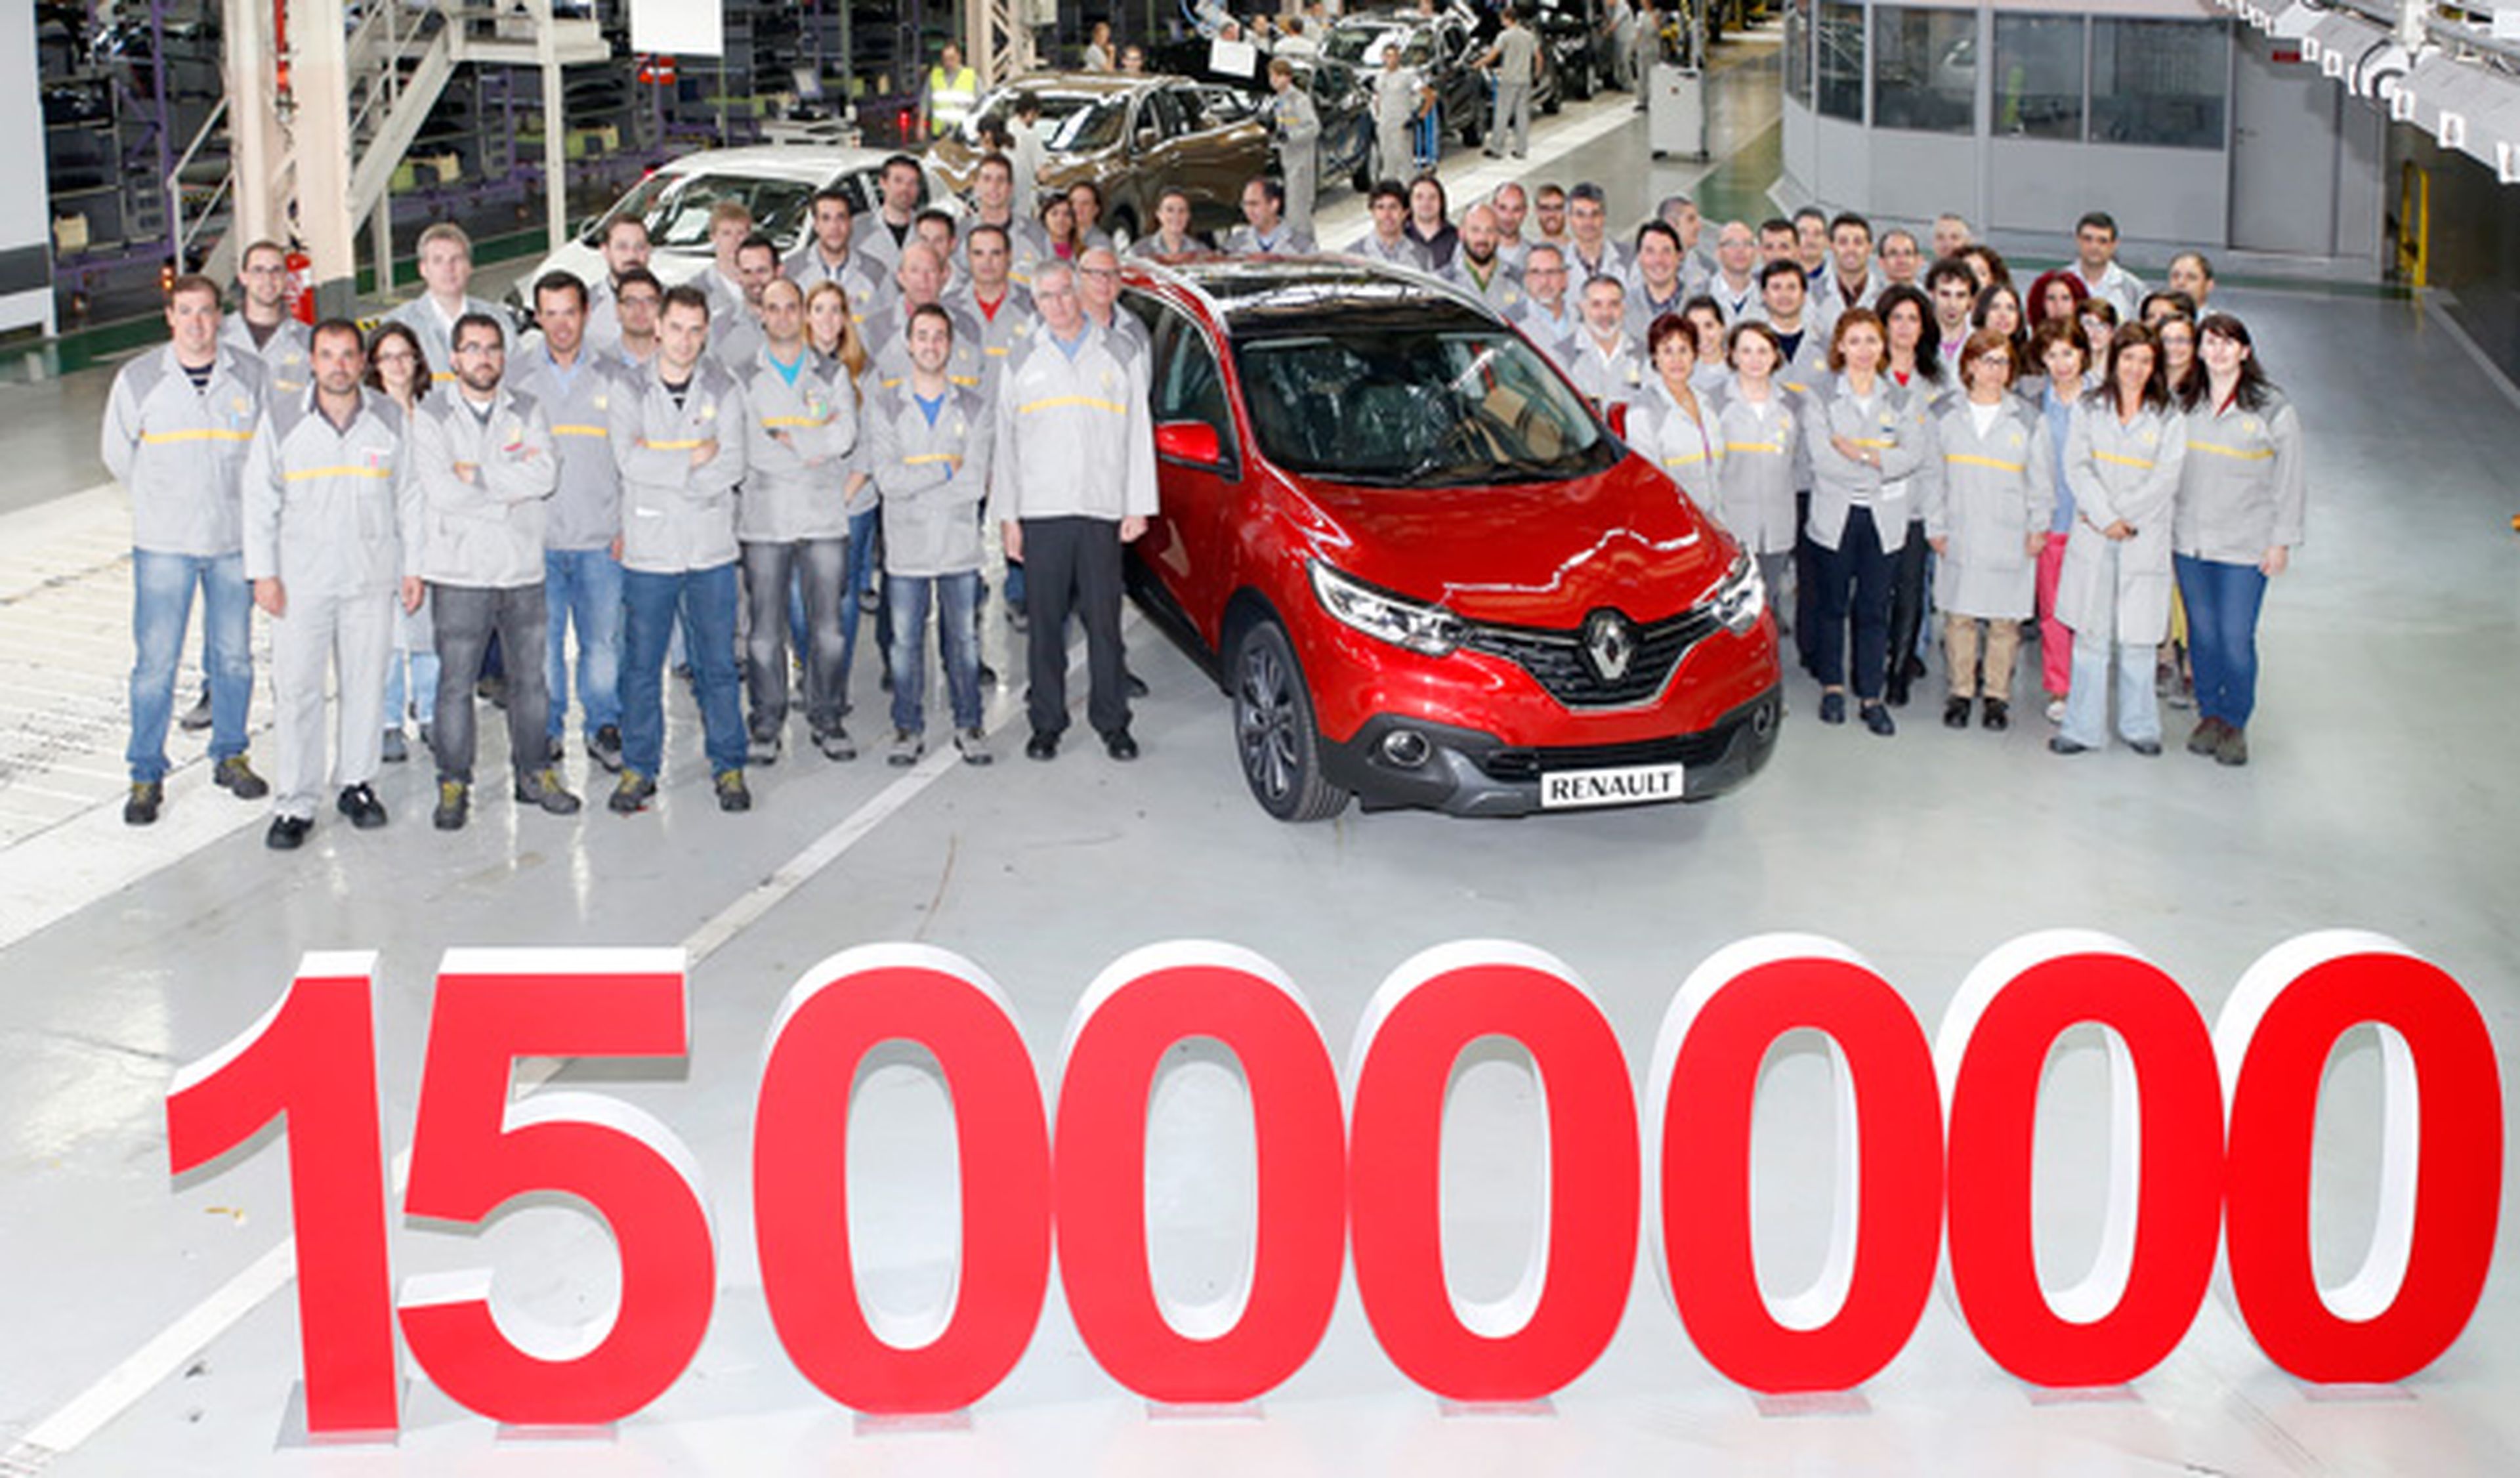 El Renault 15 millones fabricado en España es un...